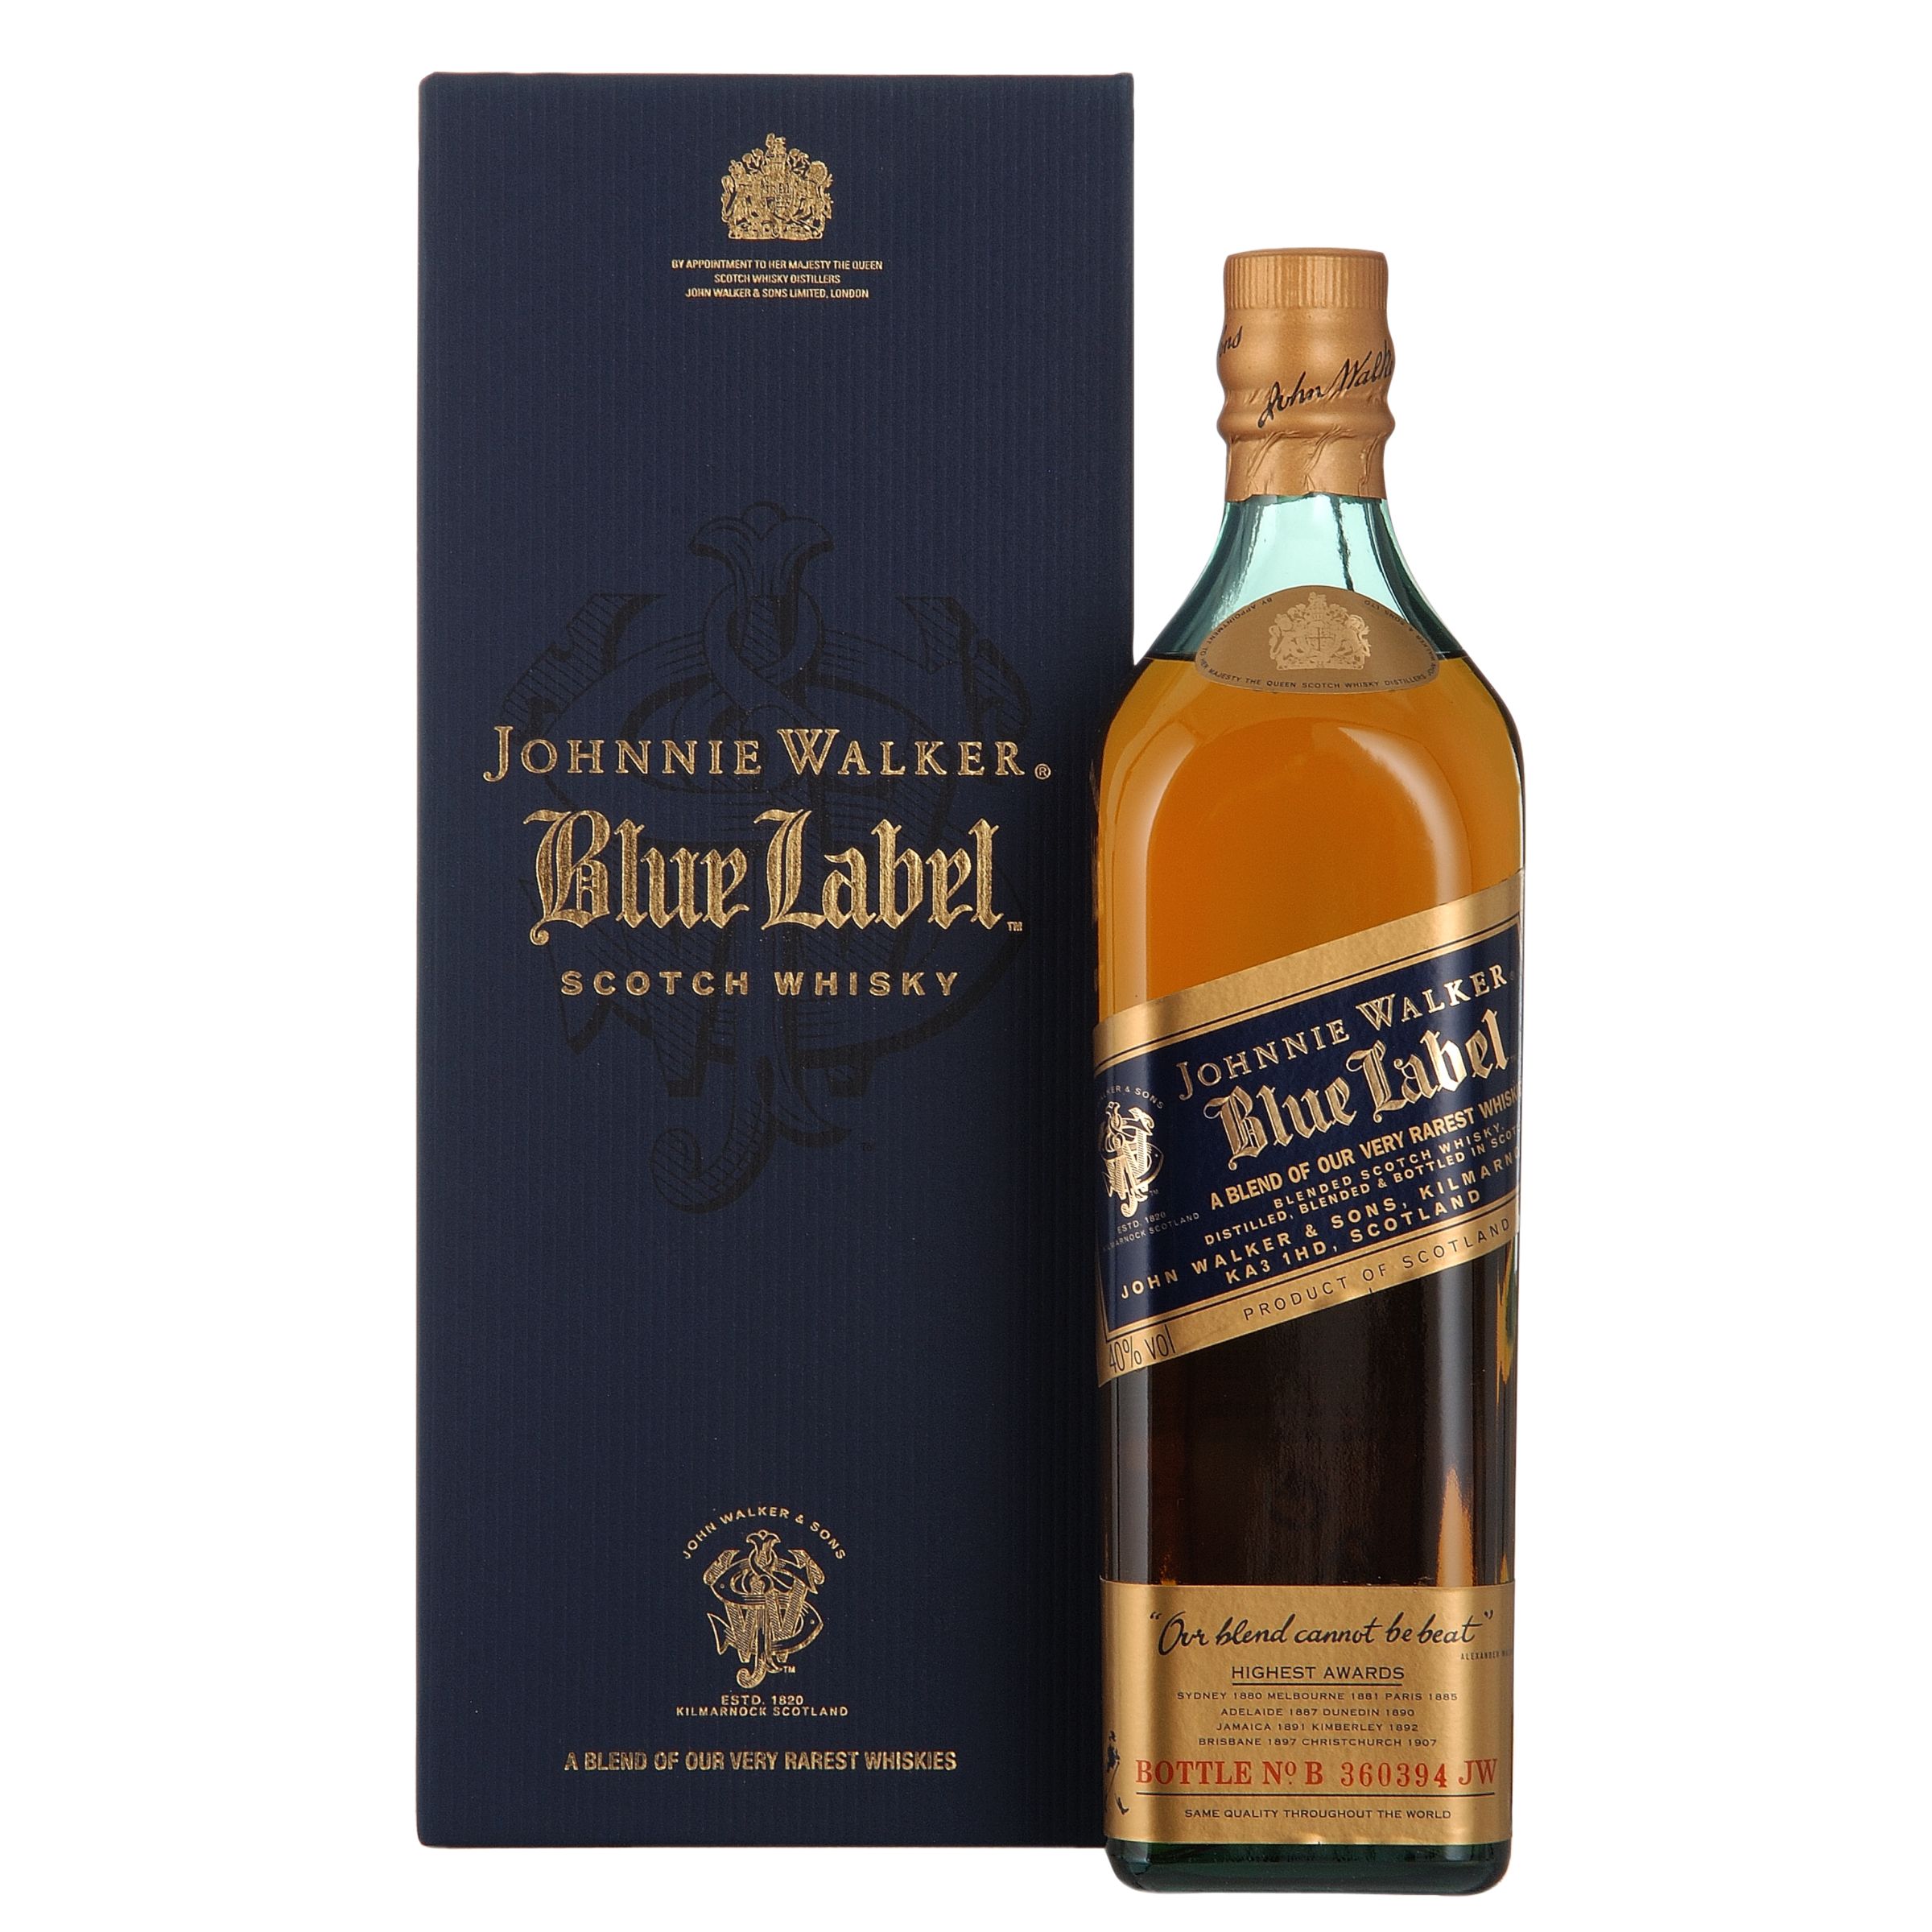 Johnnie Walker Blue Label Whisky Single Bottle Gift at John Lewis